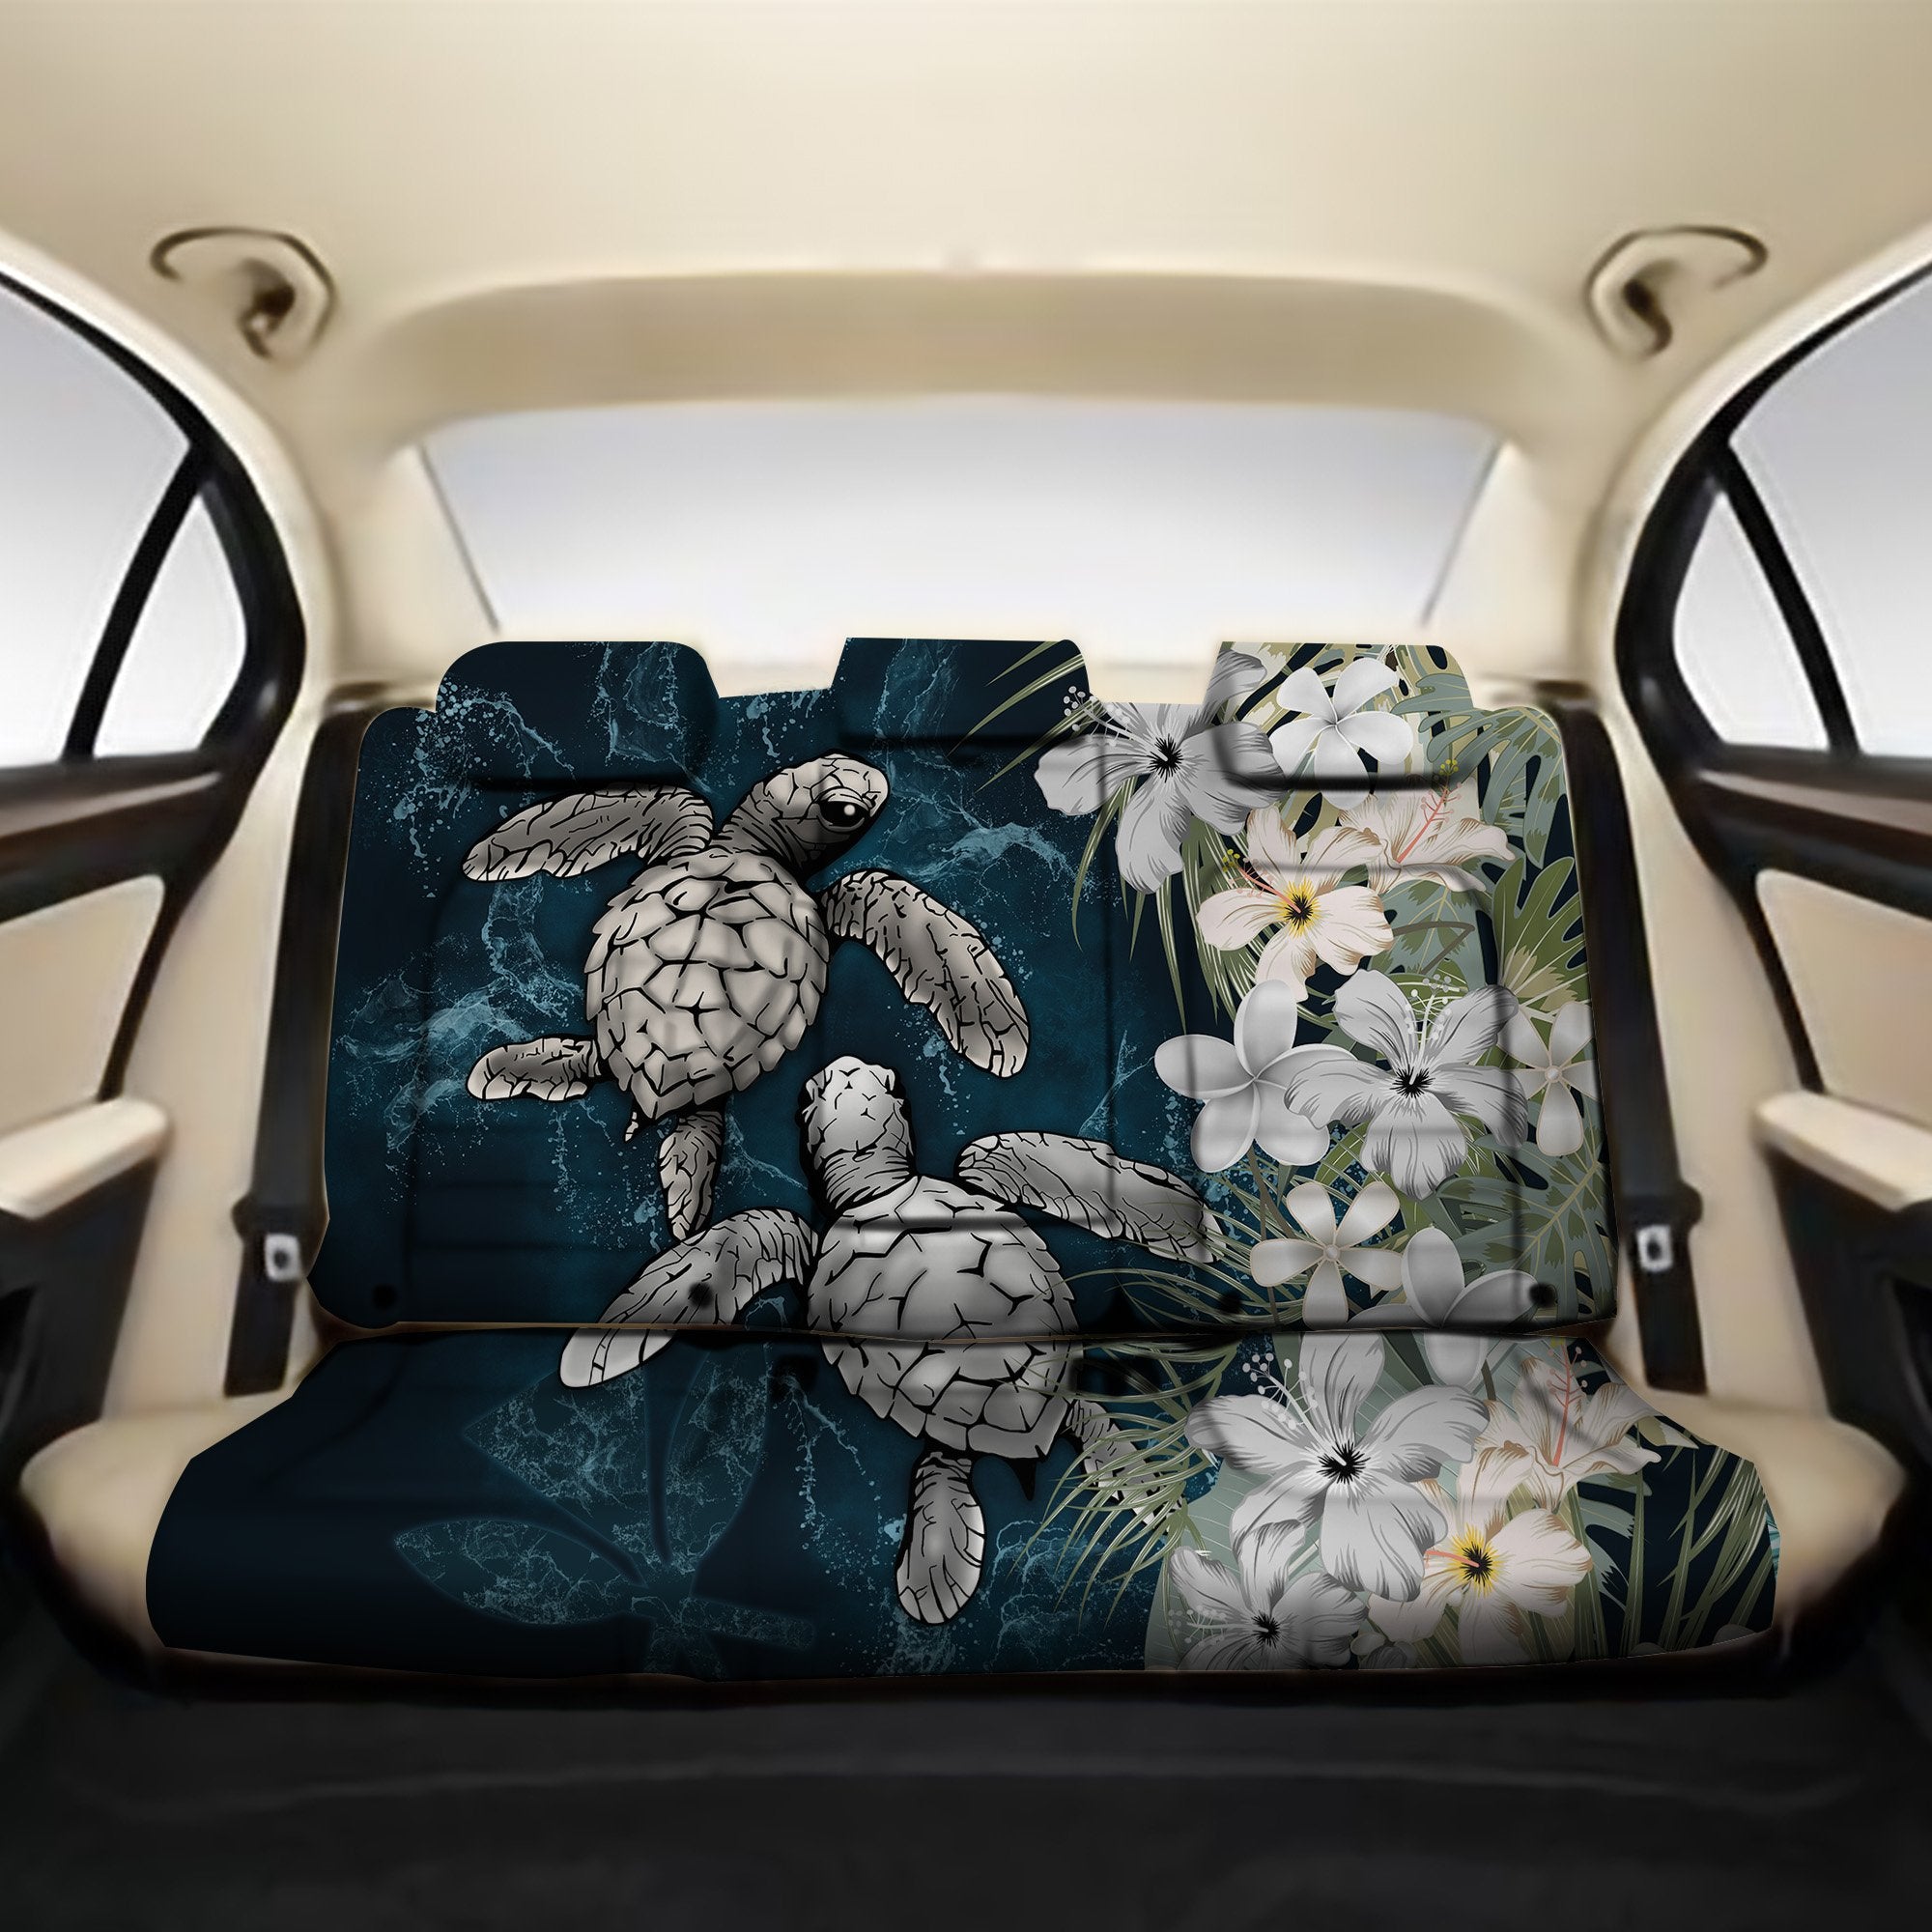 Kanaka Maoli (Hawaiian) Back Car Seat Covers - Sea Turtle Tropical Hibiscus And Plumeria White Back Car Seat Covers One Size White - Polynesian Pride